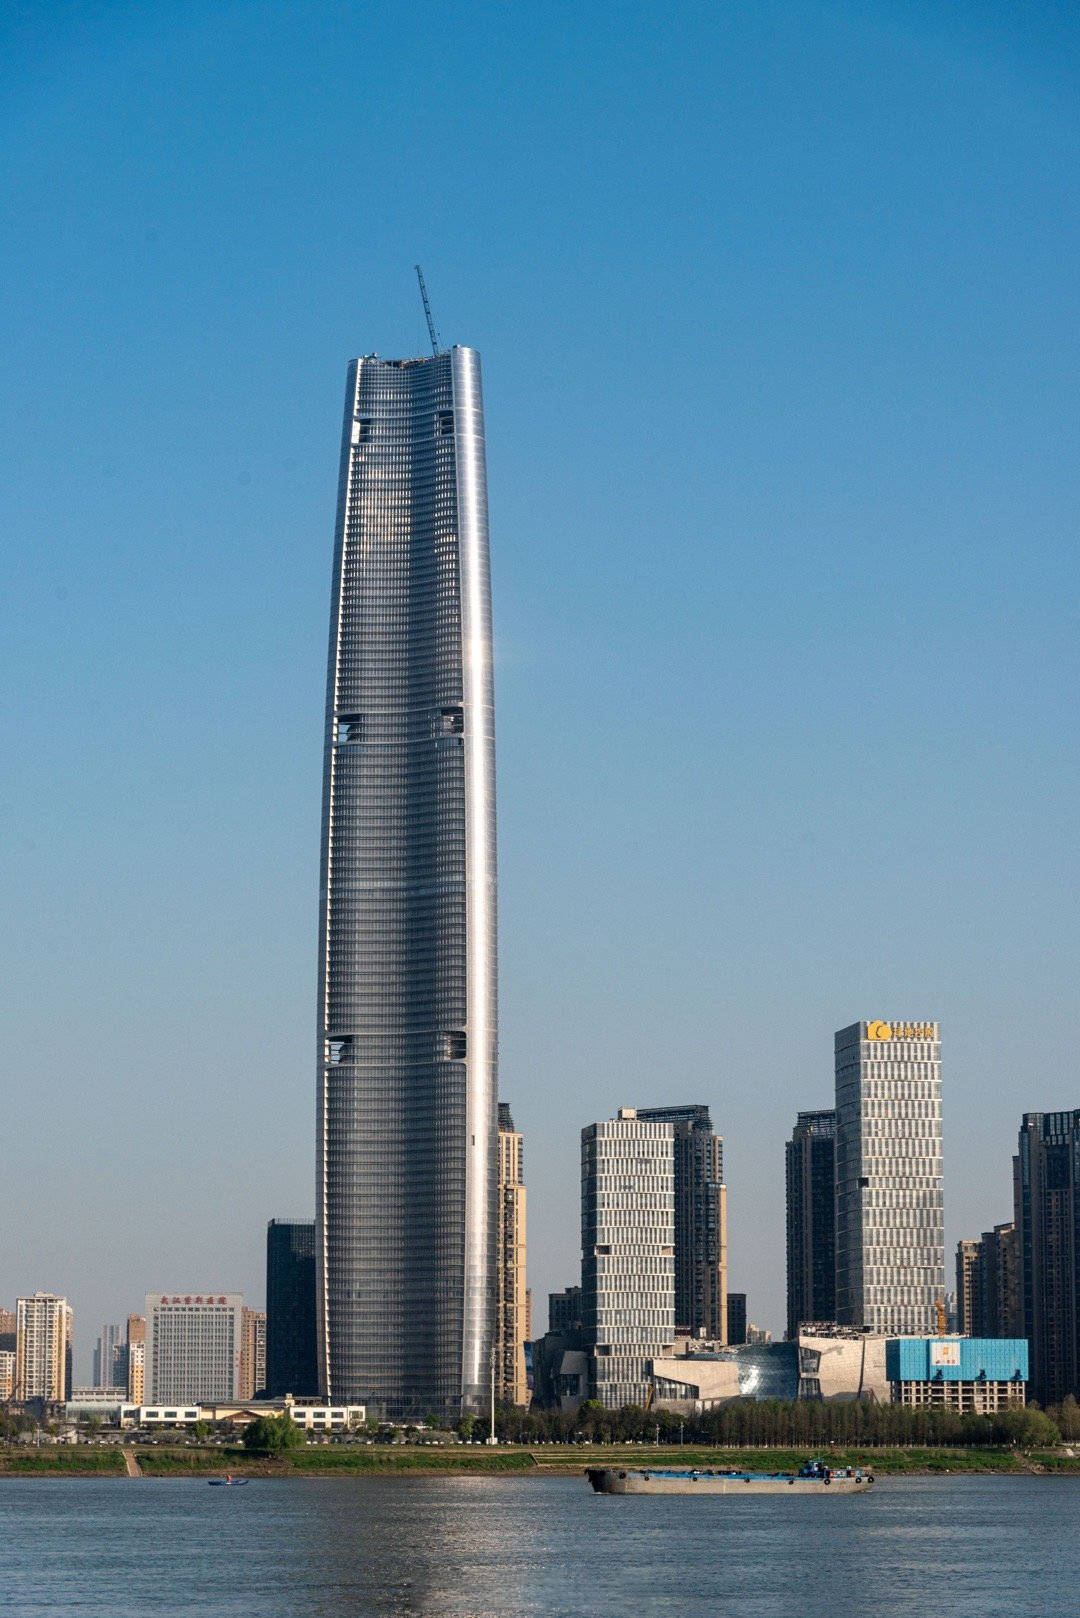 原创从中华第一高楼降至华中第一高楼武汉绿地中心即将建成